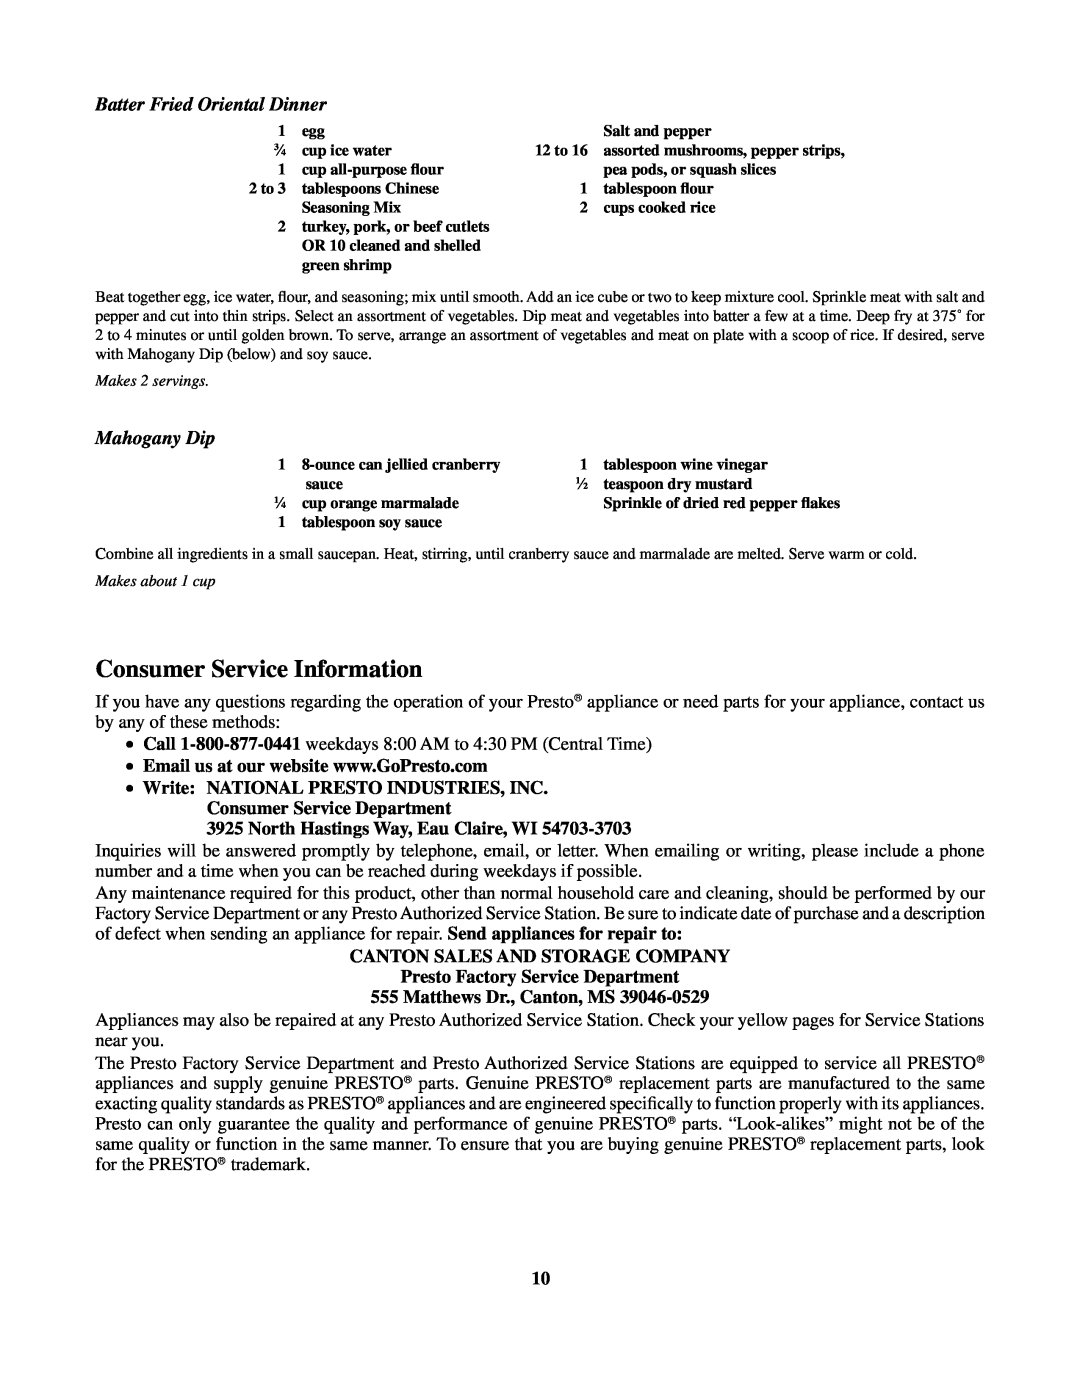 Presto Digital ProFry Consumer Service Information, Batter Fried Oriental Dinner, Mahogany Dip, Matthews Dr., Canton, MS 